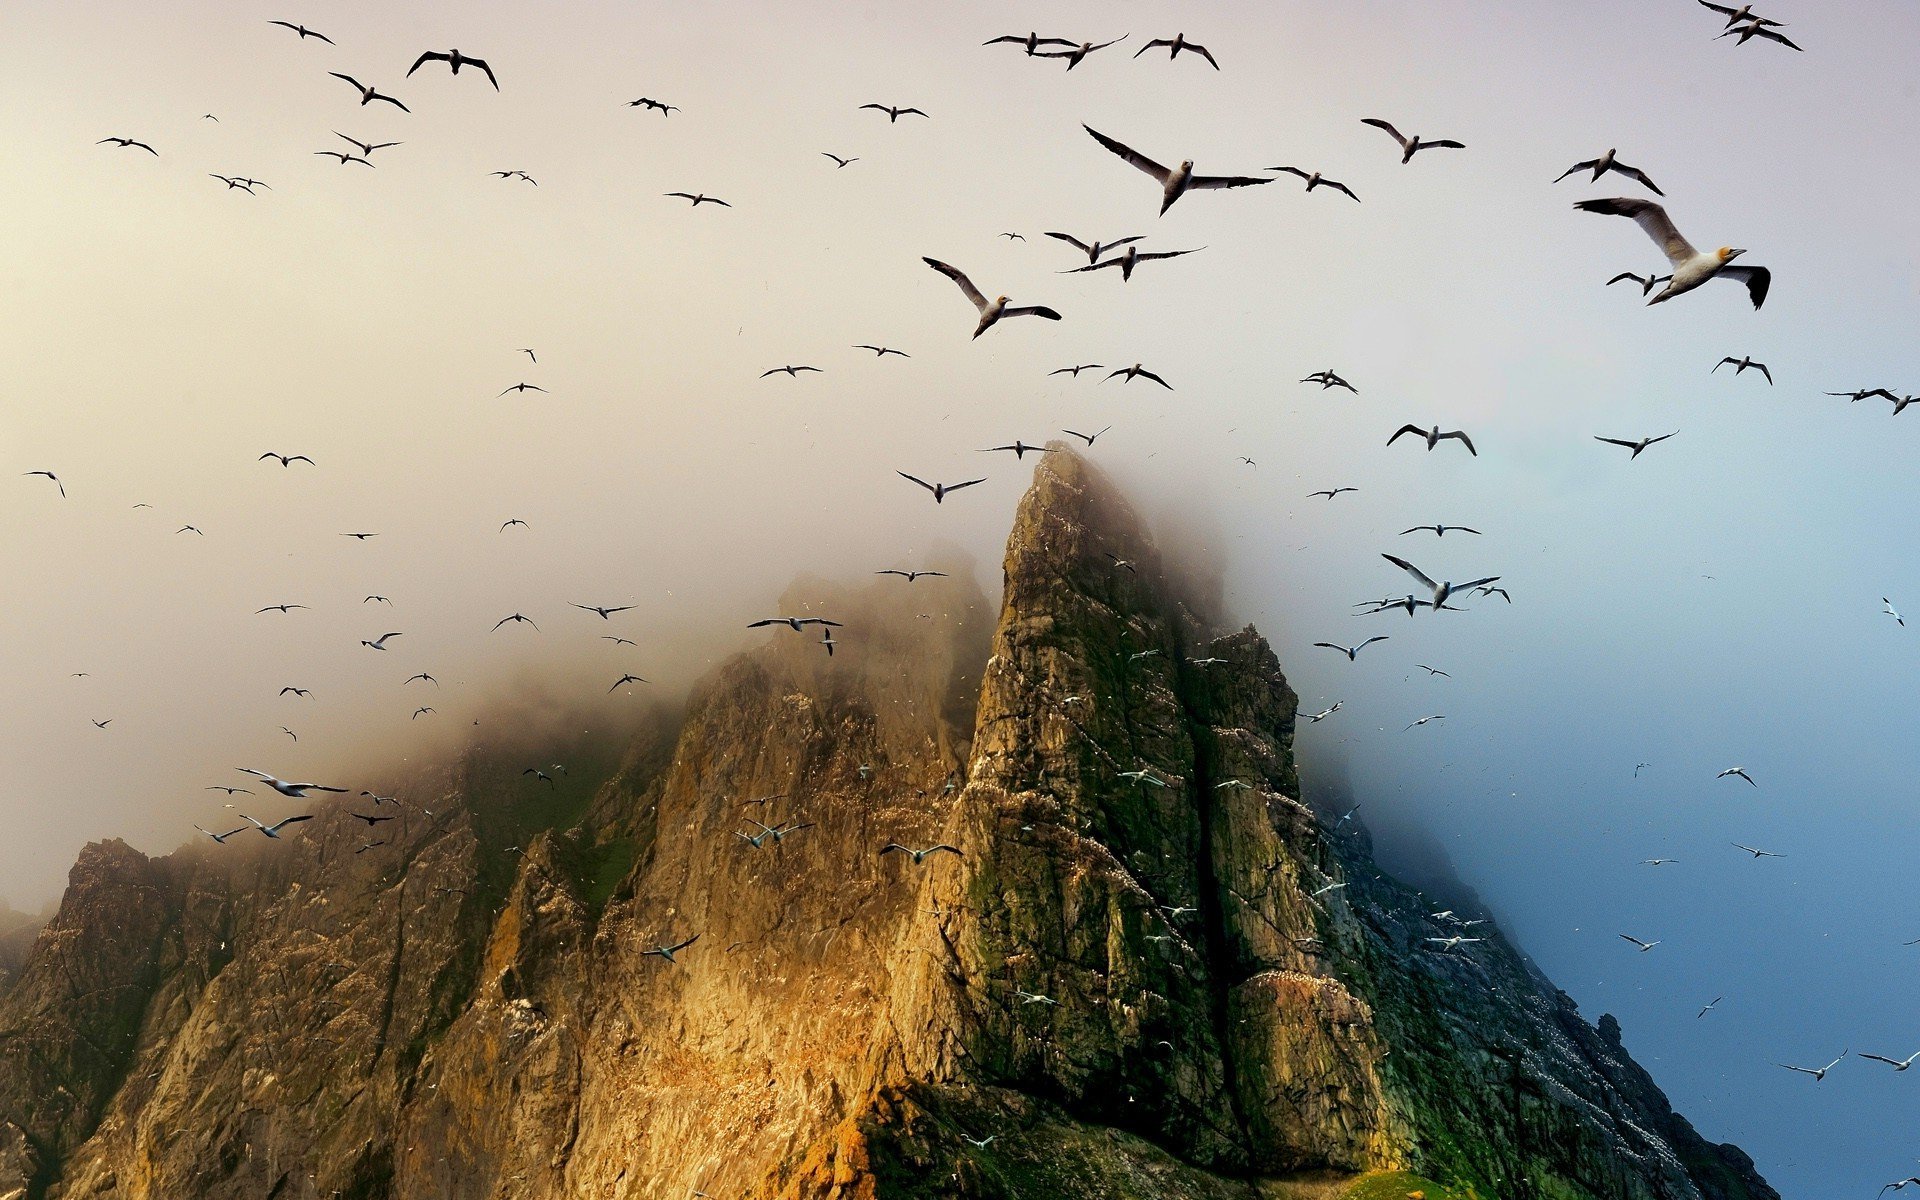 Вокруг была дикая природа. Дикая Шотландия Гебридские острова. Стая птиц. Птицы в горах. Птица над горами.